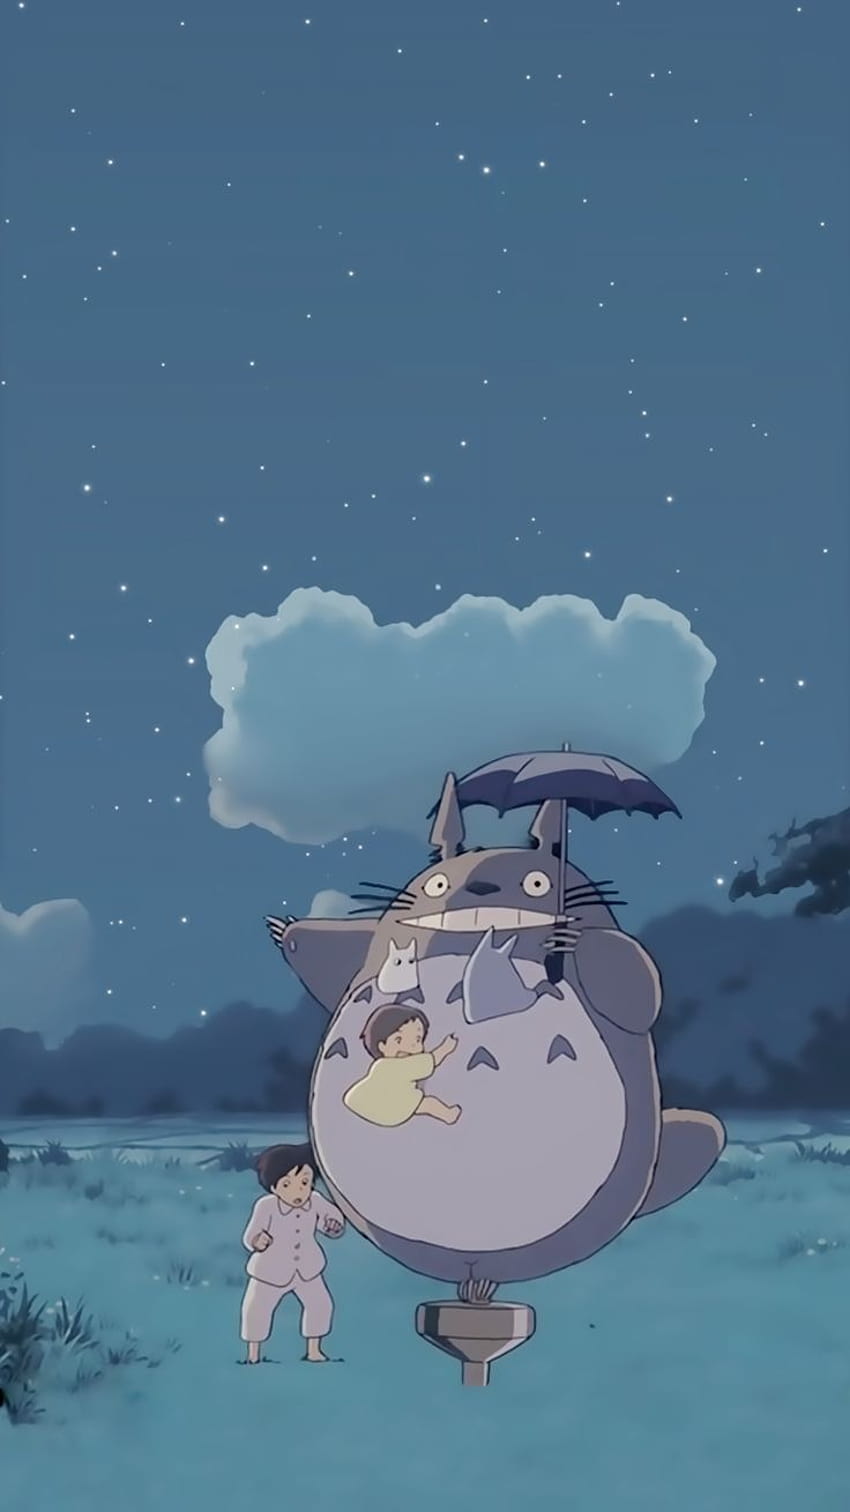 지브리 이웃집 토토로 핸드폰 배경화면 : 네이버 블로그, Totoro Aesthetic Hd Phone Wallpaper | Pxfuel